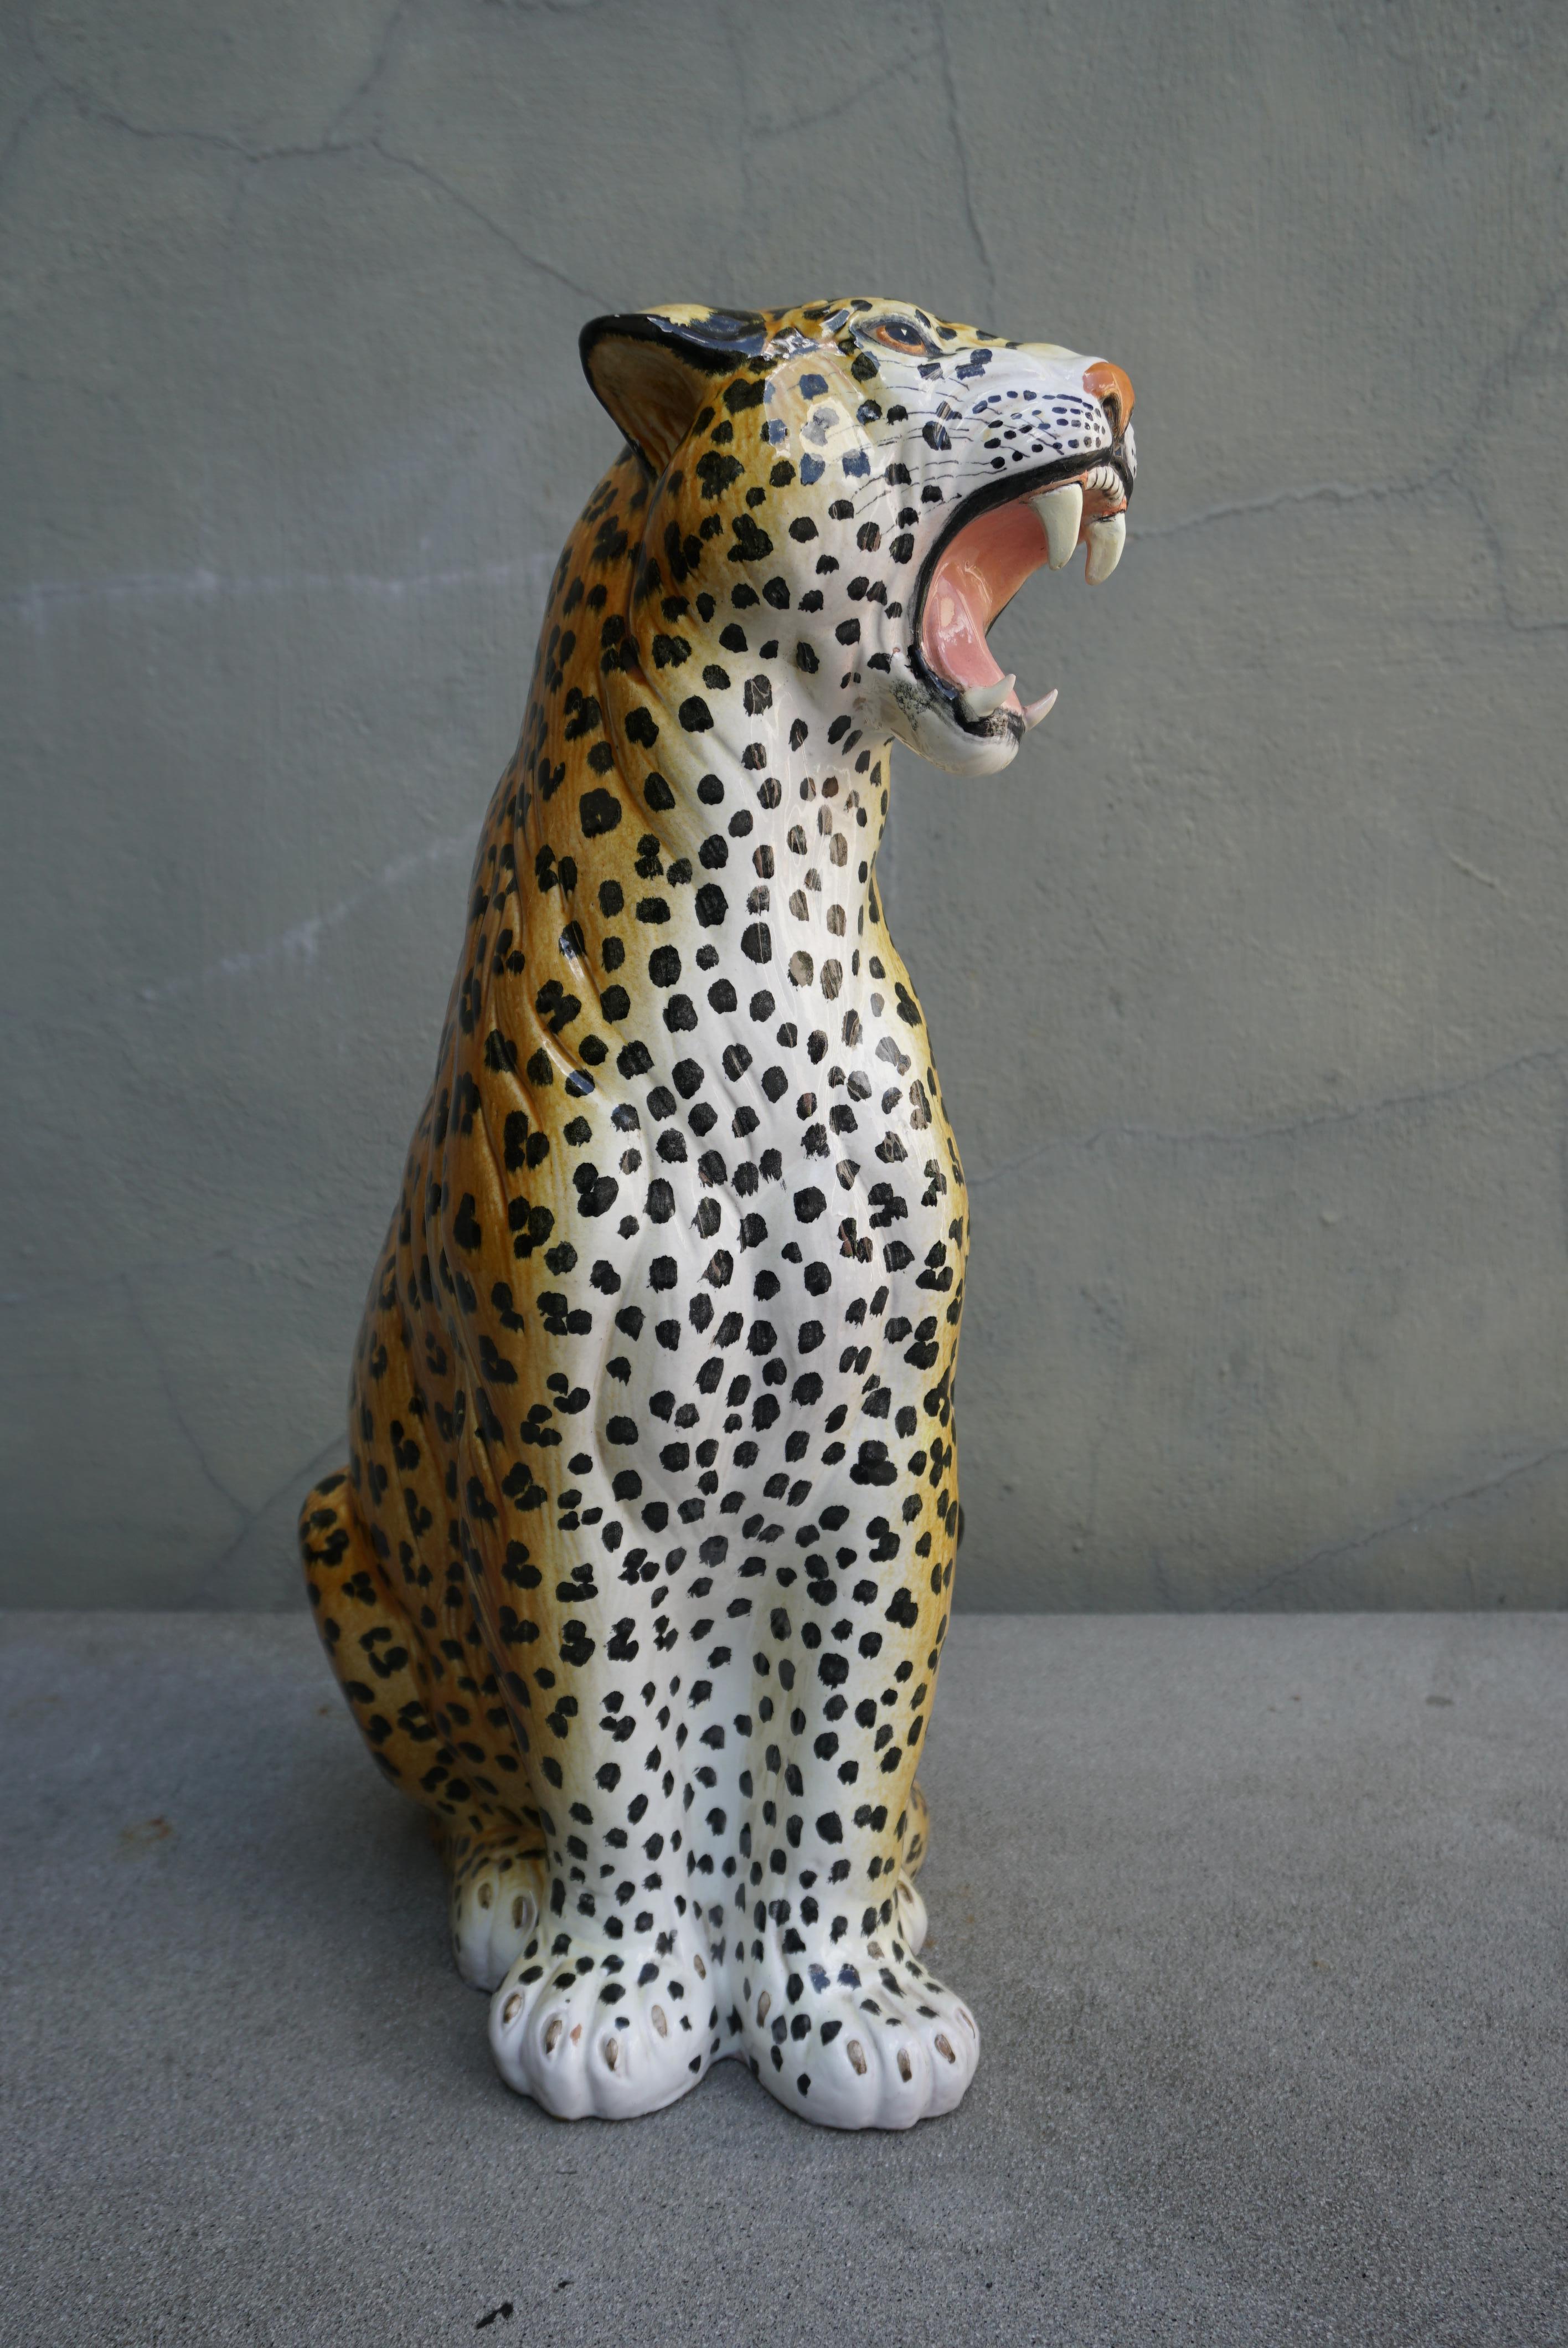 Diese große, gut ausgeführte Geparden-Skulptur aus Keramik stammt aus der Zeit um 1960 und ist im Stil der Jahrhundertmitte gefertigt. Die Skulptur besteht aus detailliert geformter Keramik, die von Hand mit vielen realistischen Details in einer